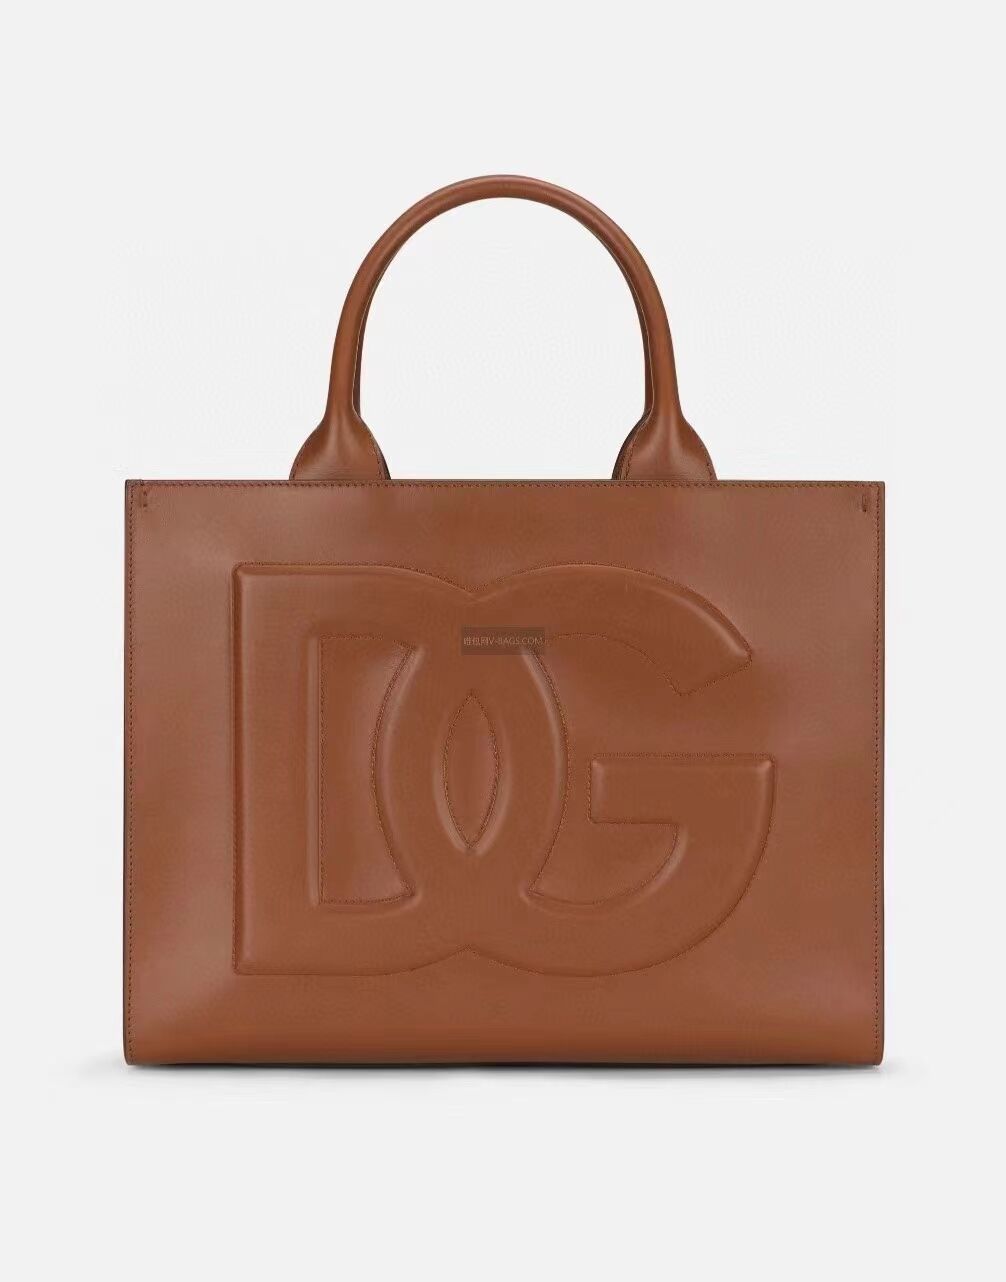 Dolce & Gabbana Origianl Leather Shoulder Bag 3041 brown